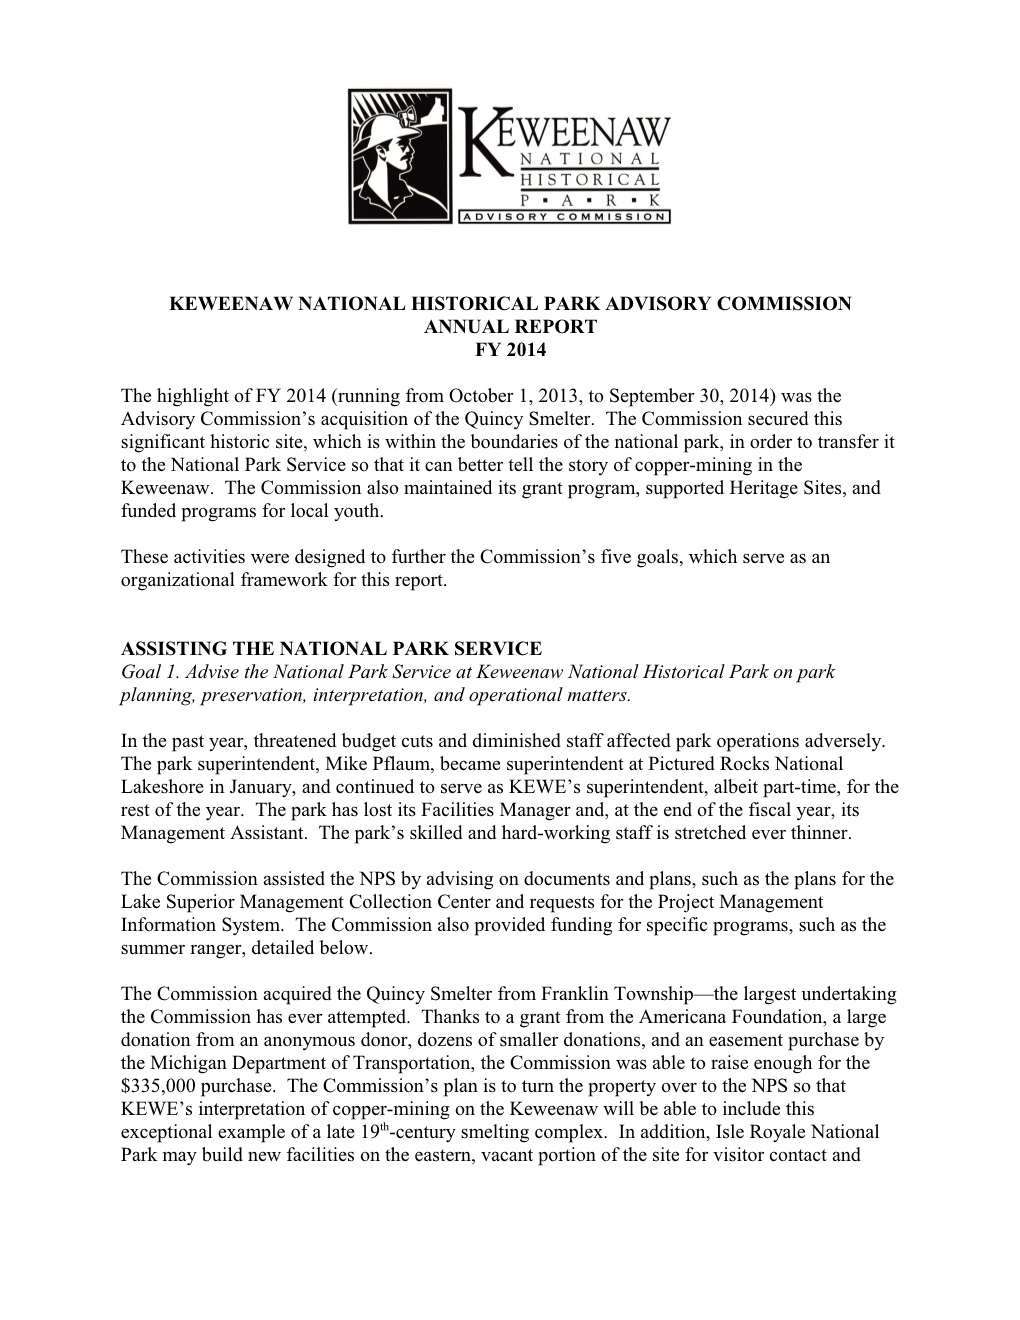 Keweenaw National Historical Park Advisory Commission